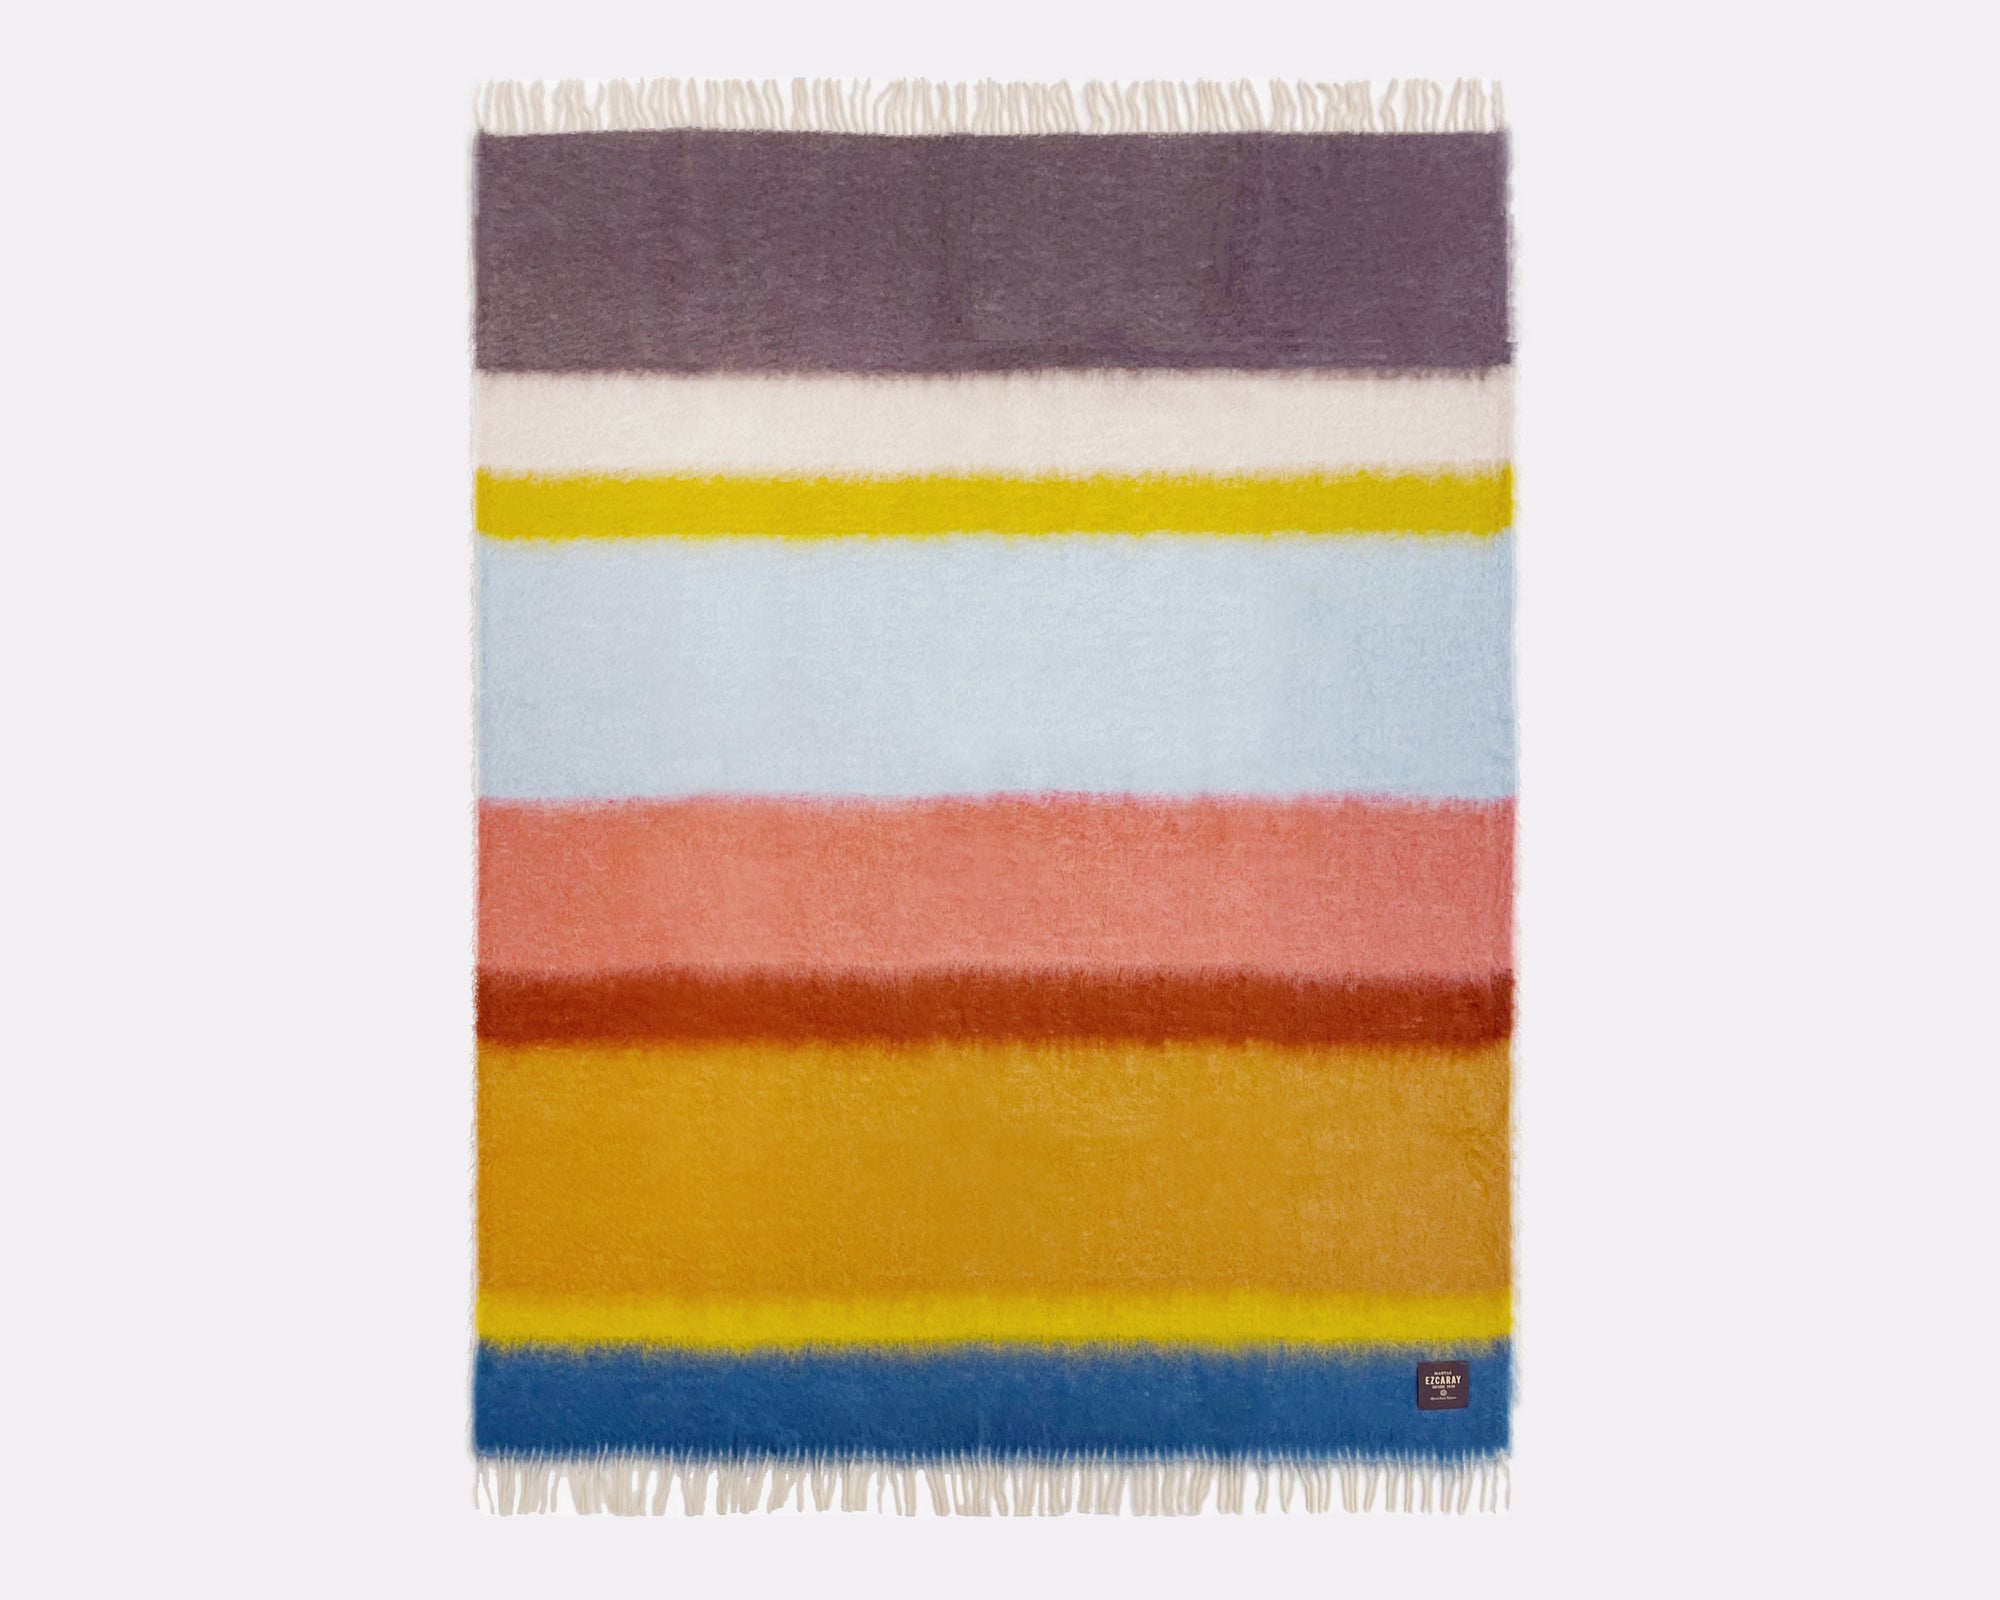 Mohair Blanket by Mantas Ezcaray - Matisse 003